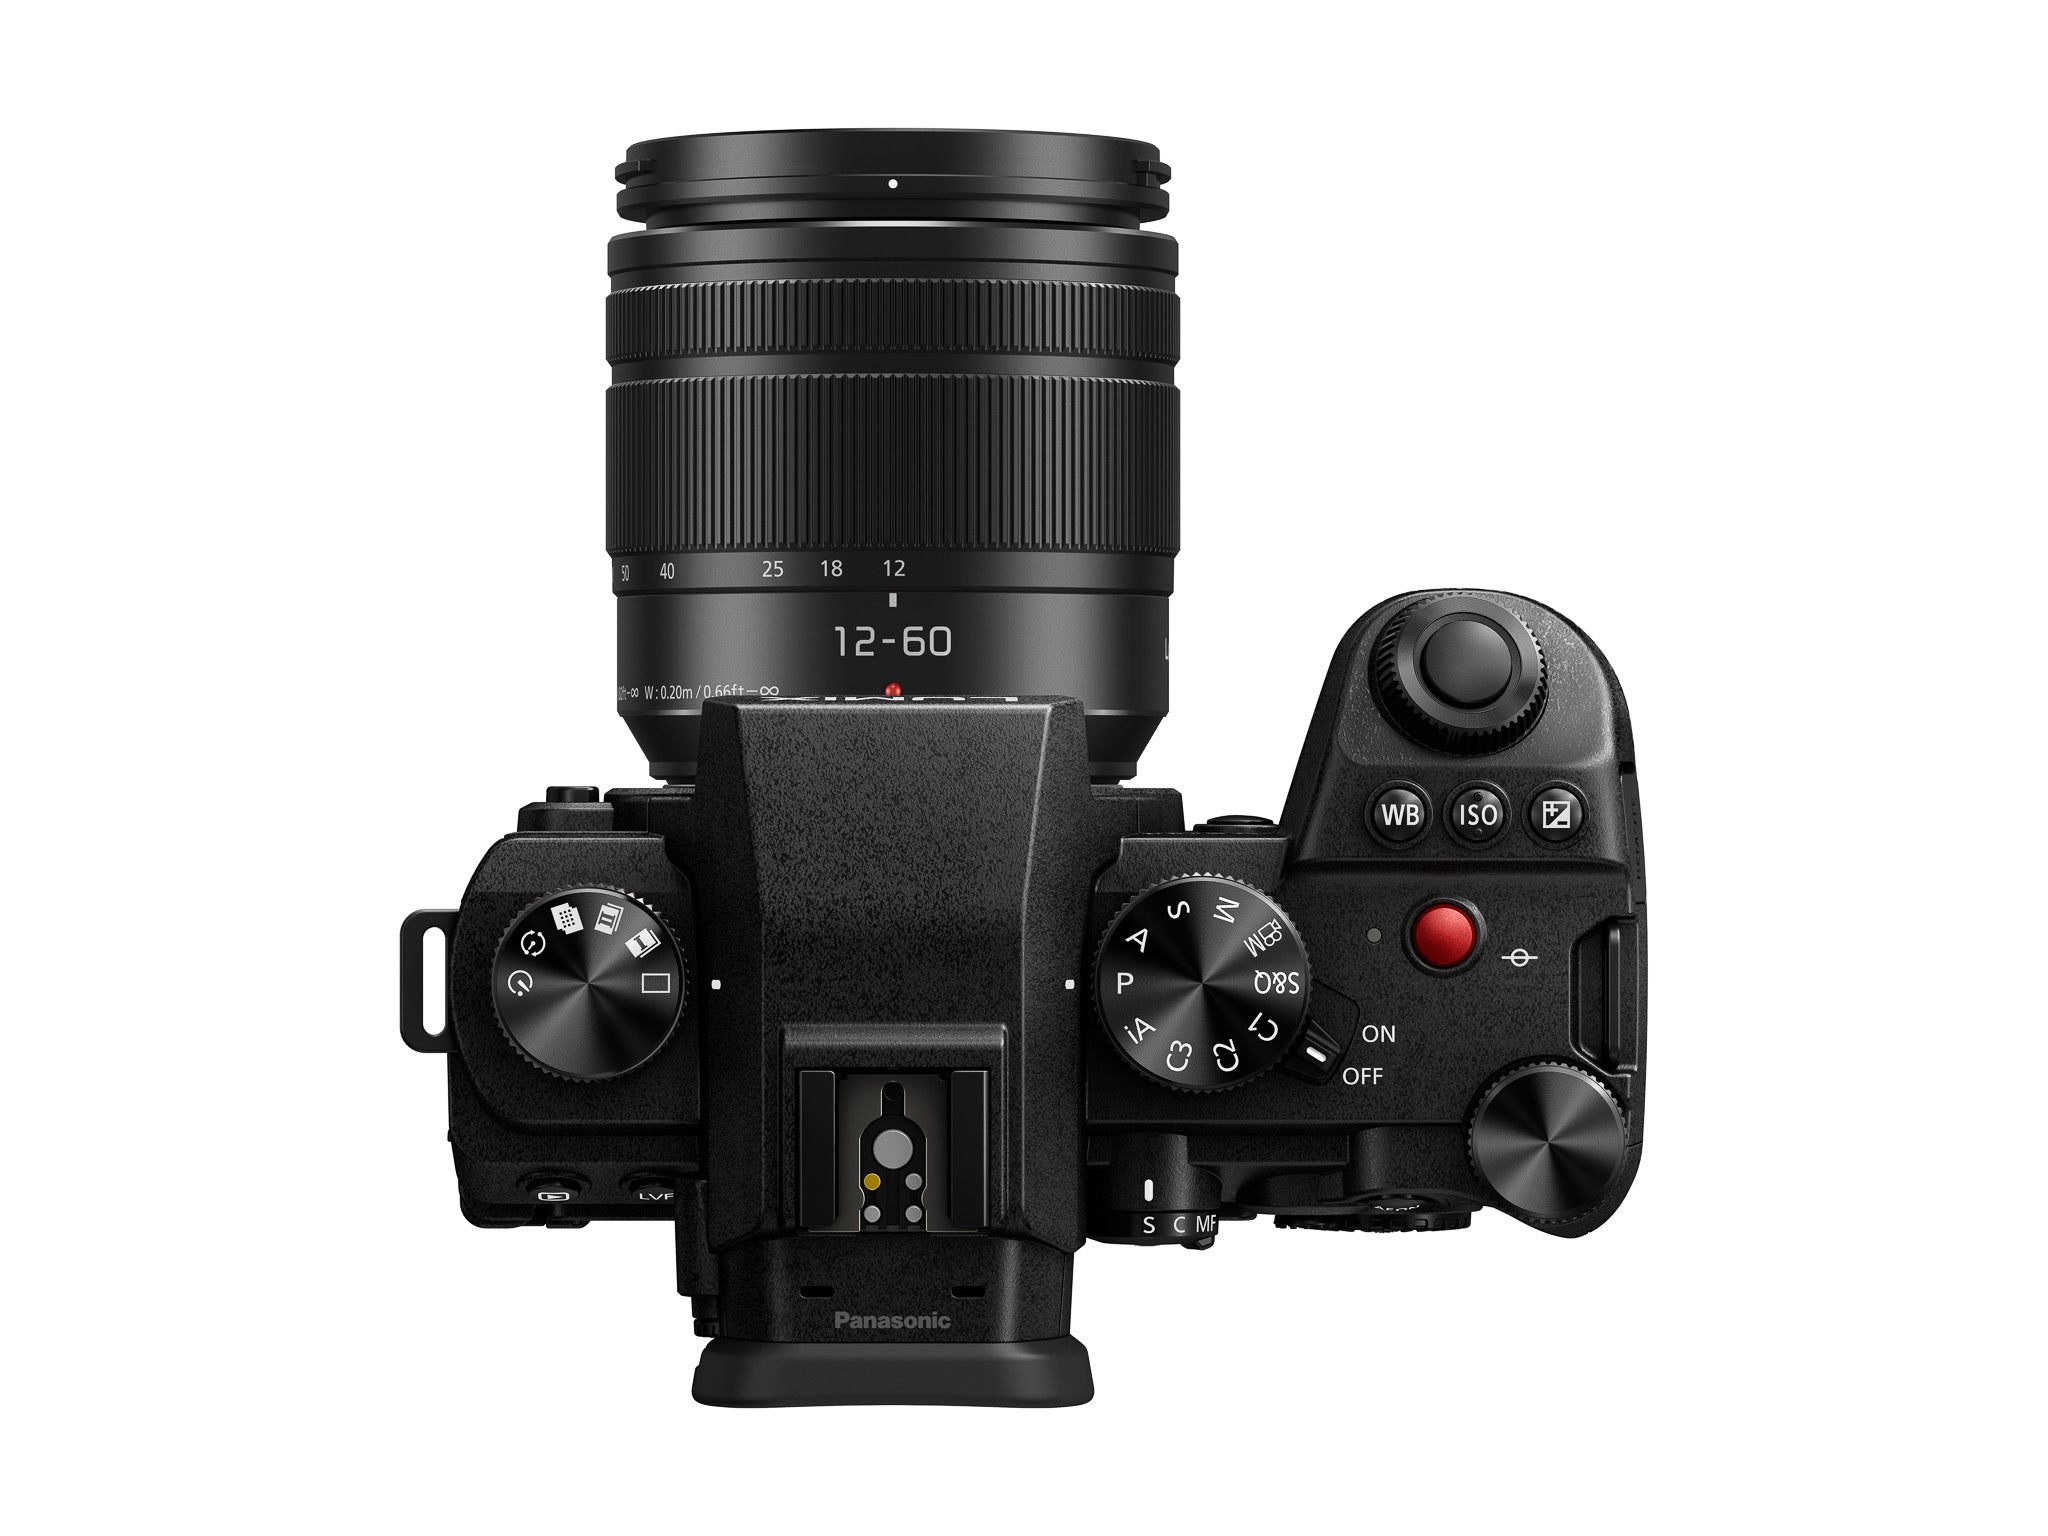 Panasonic Lumix DC-G9 II Camera + 12-60mm Lens